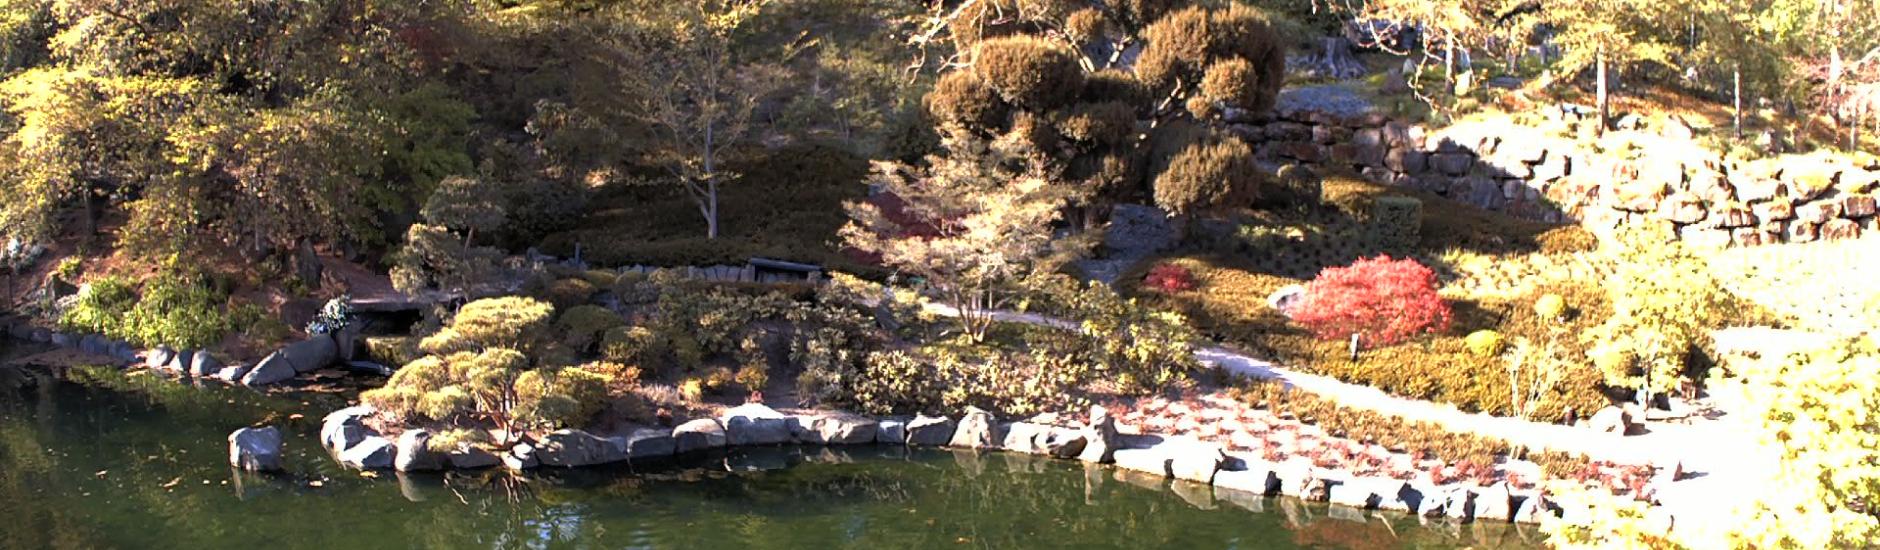 Japanischer Garten: Oberer Teich